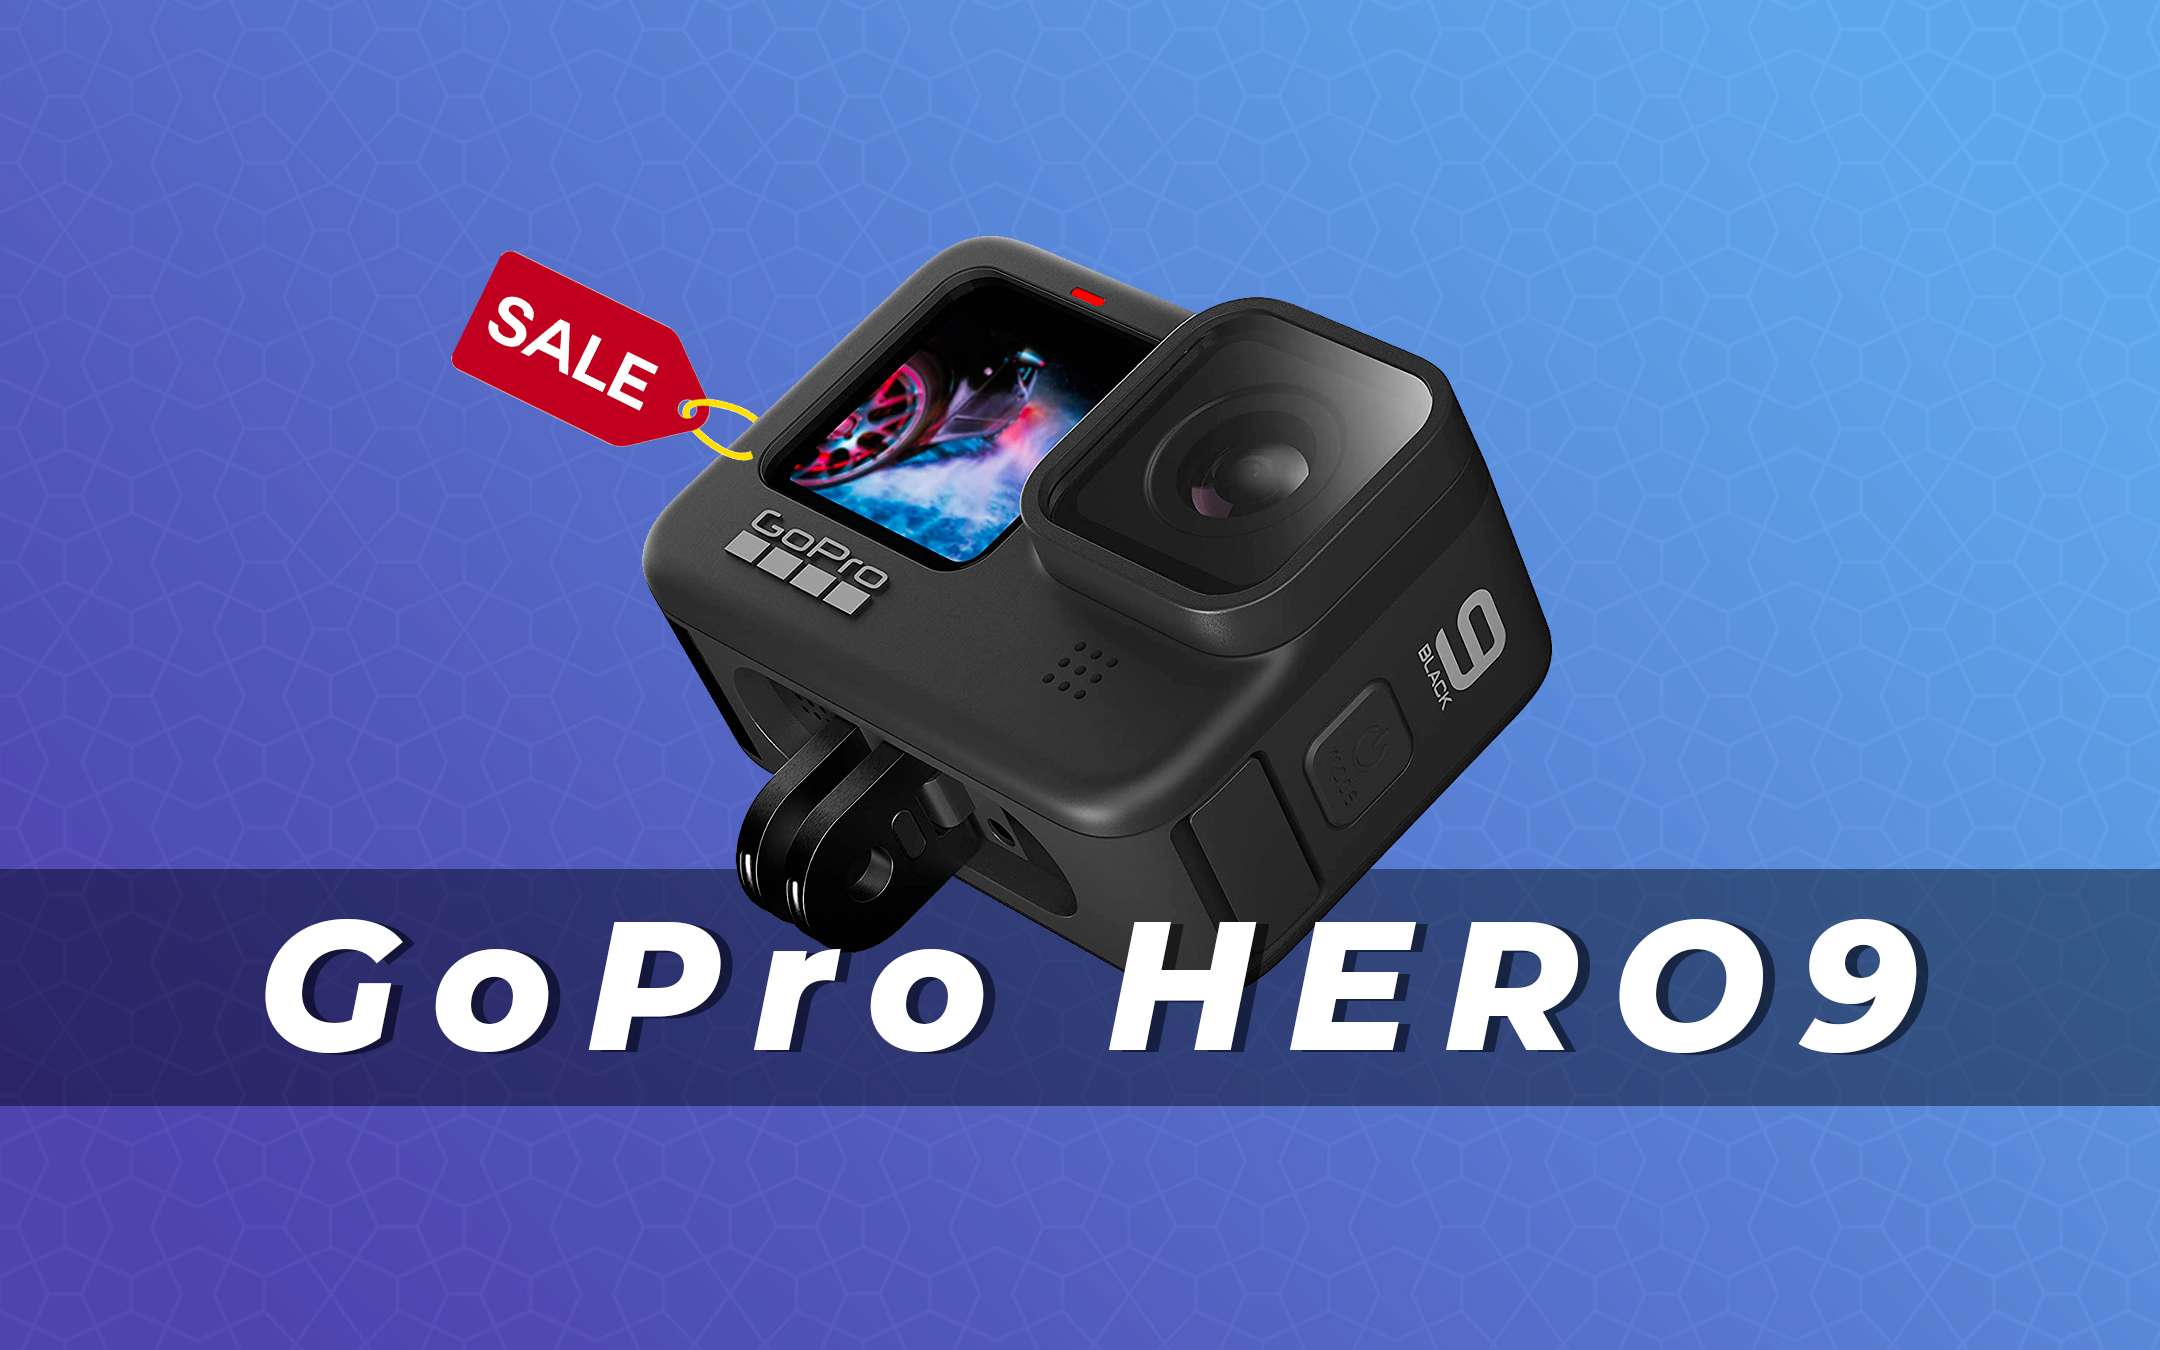 GoPro HERO9 in offerta su Amazon: sconto di 60 euro